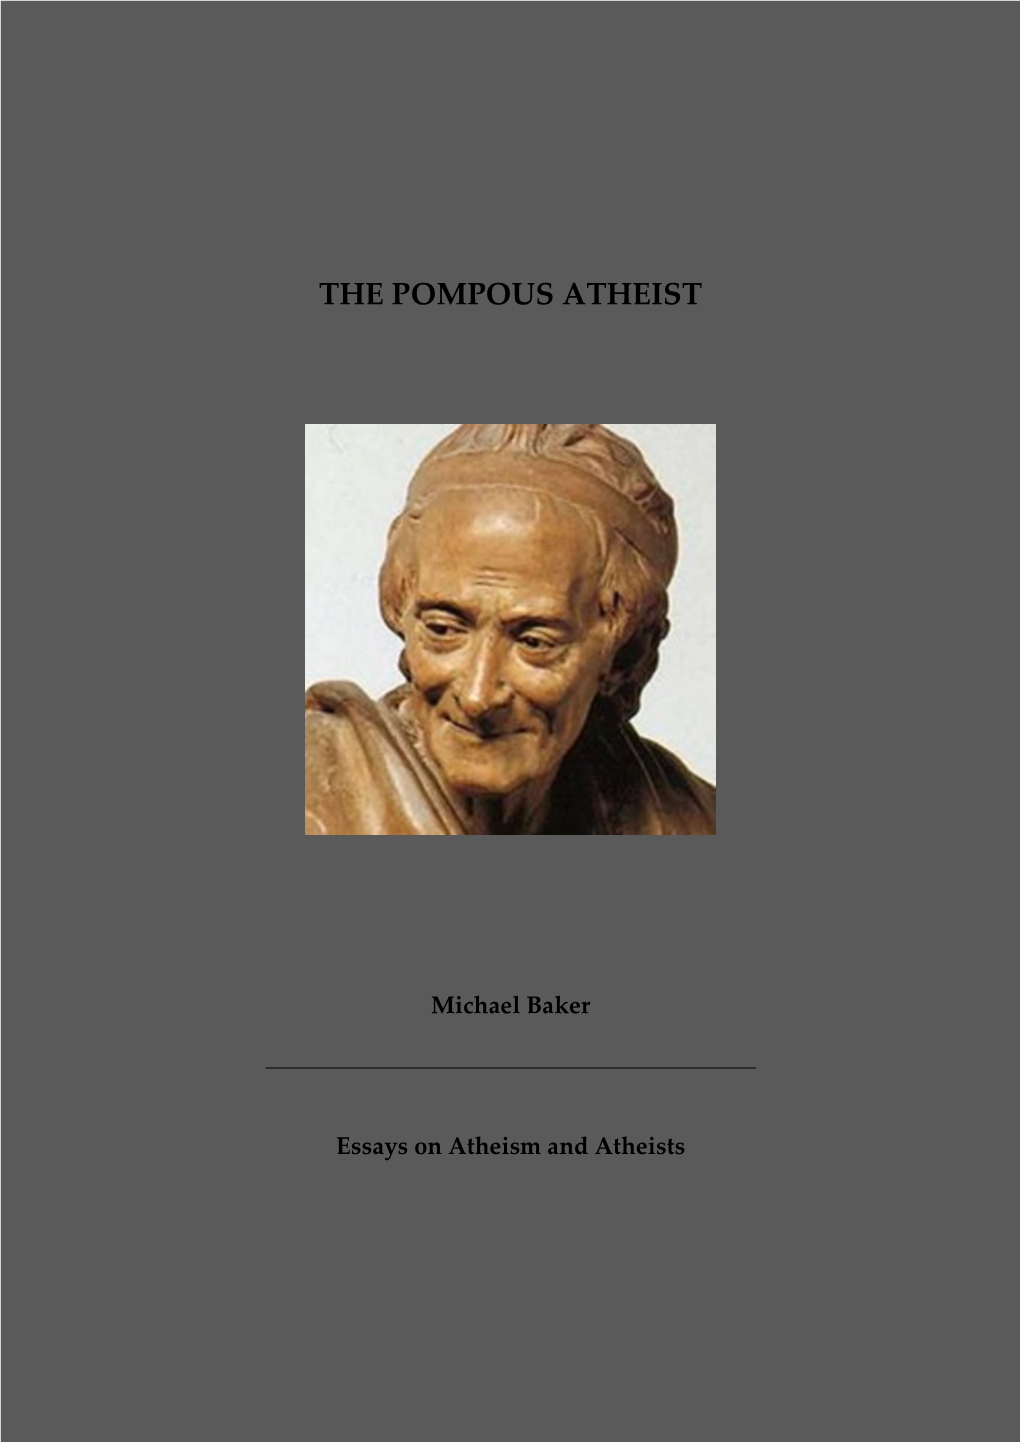 The Pompous Atheist